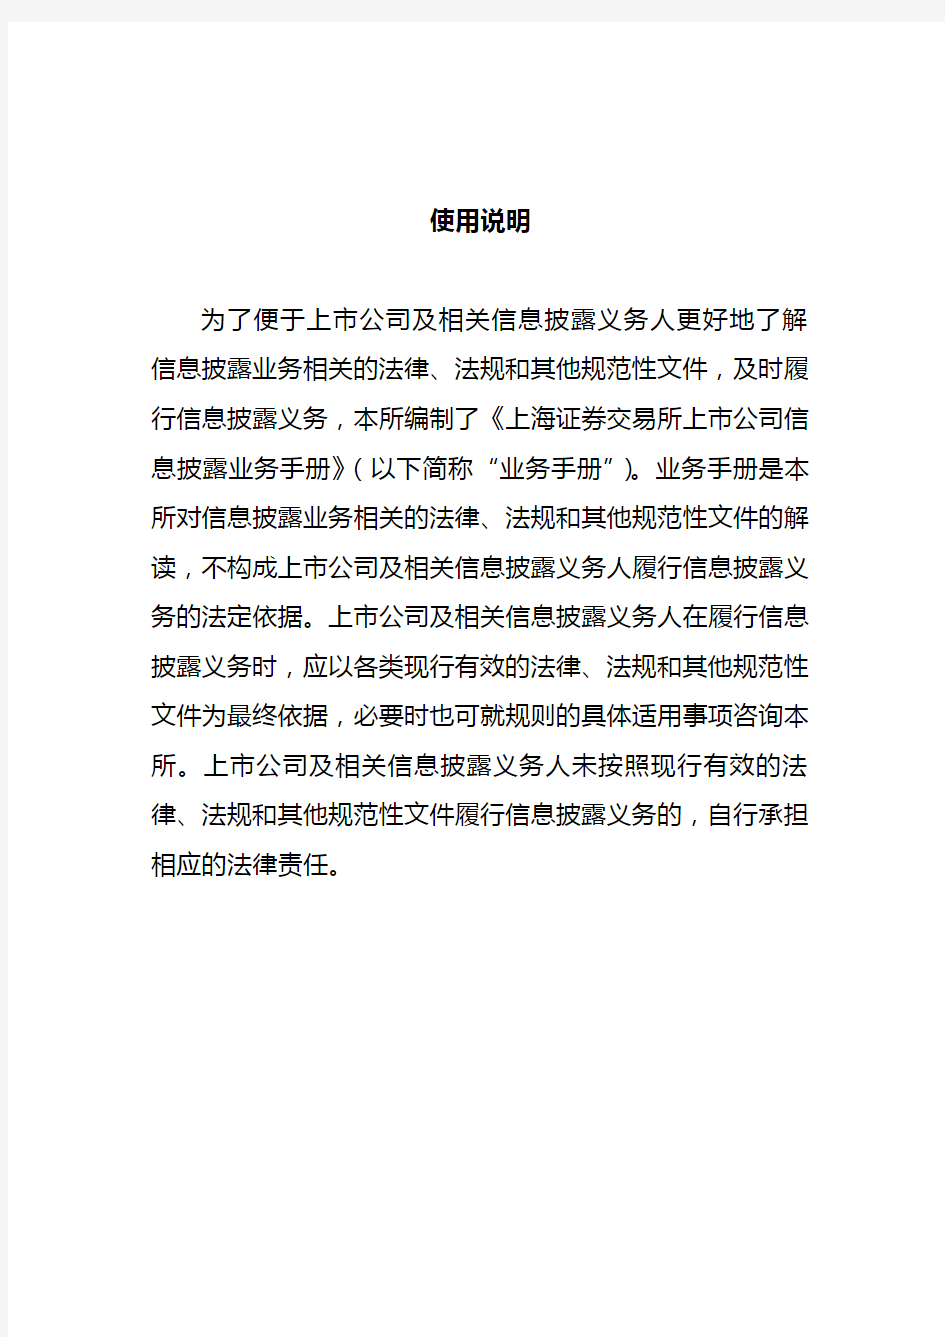 上海证券交易所上市公司信息披露业务手册(2014年2月修订).介绍